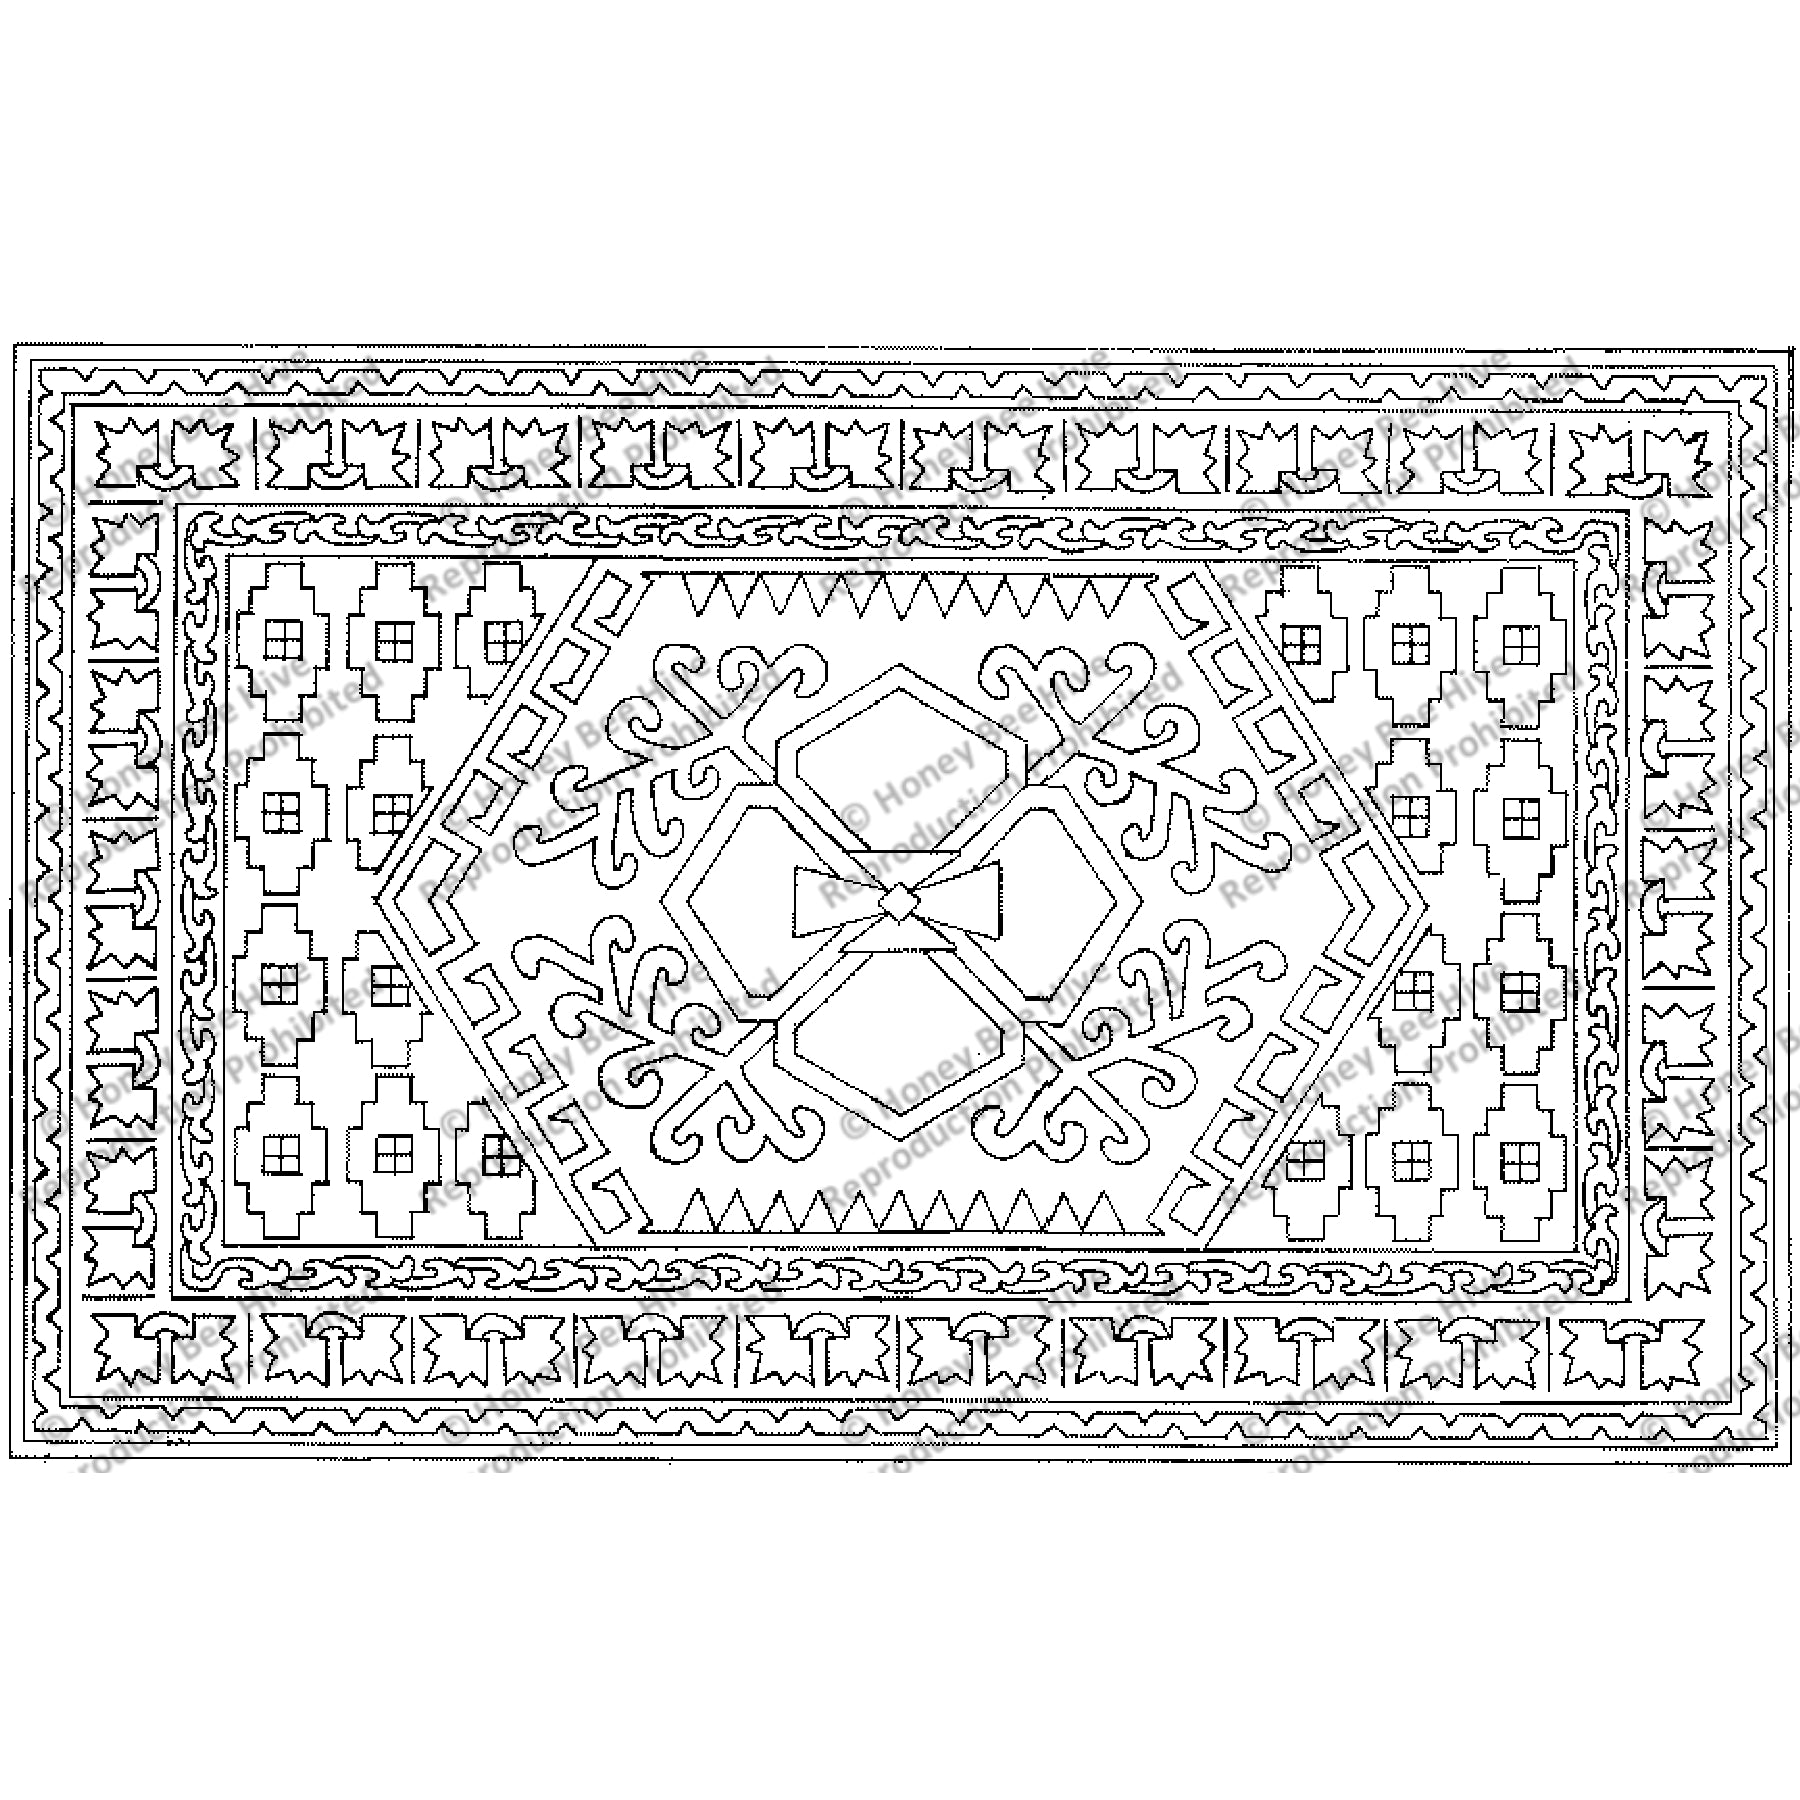 Maltese Magic, rug hooking pattern